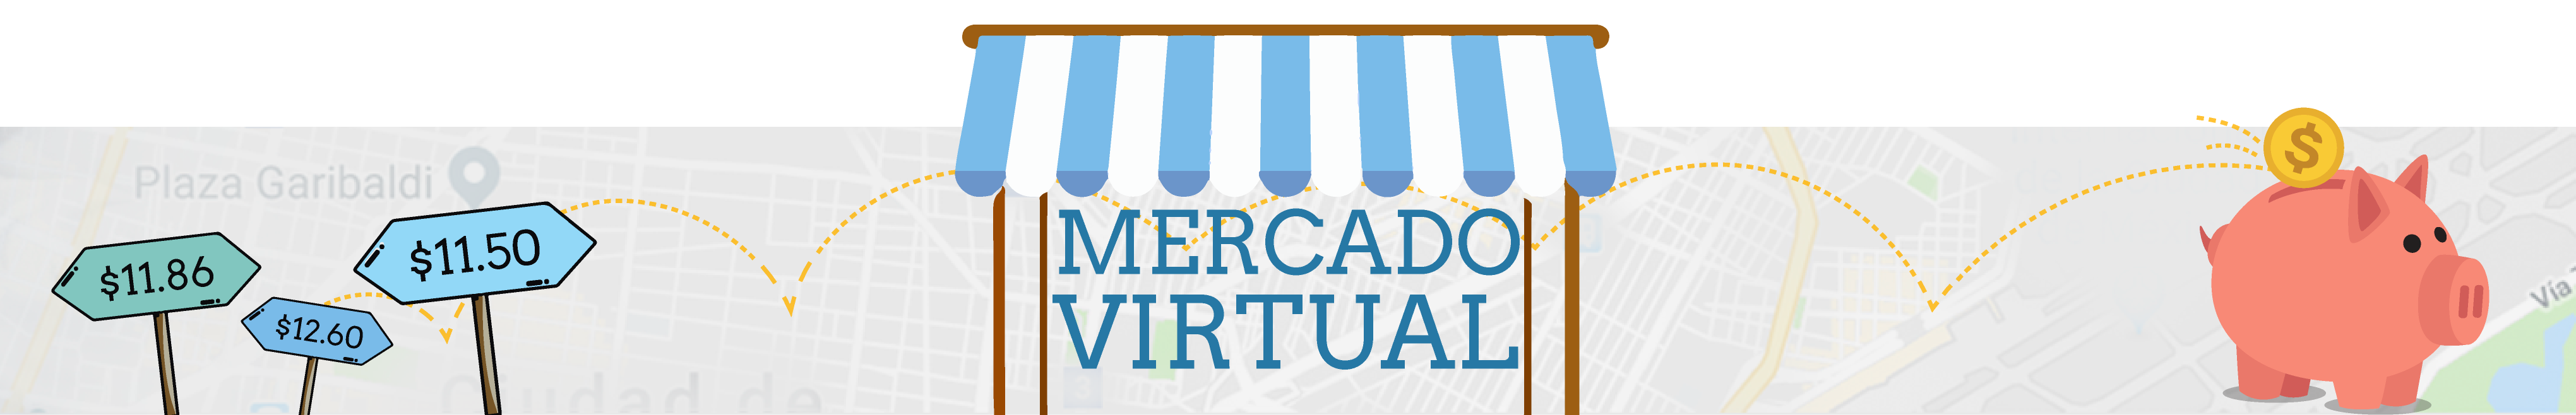 mercado_virtual